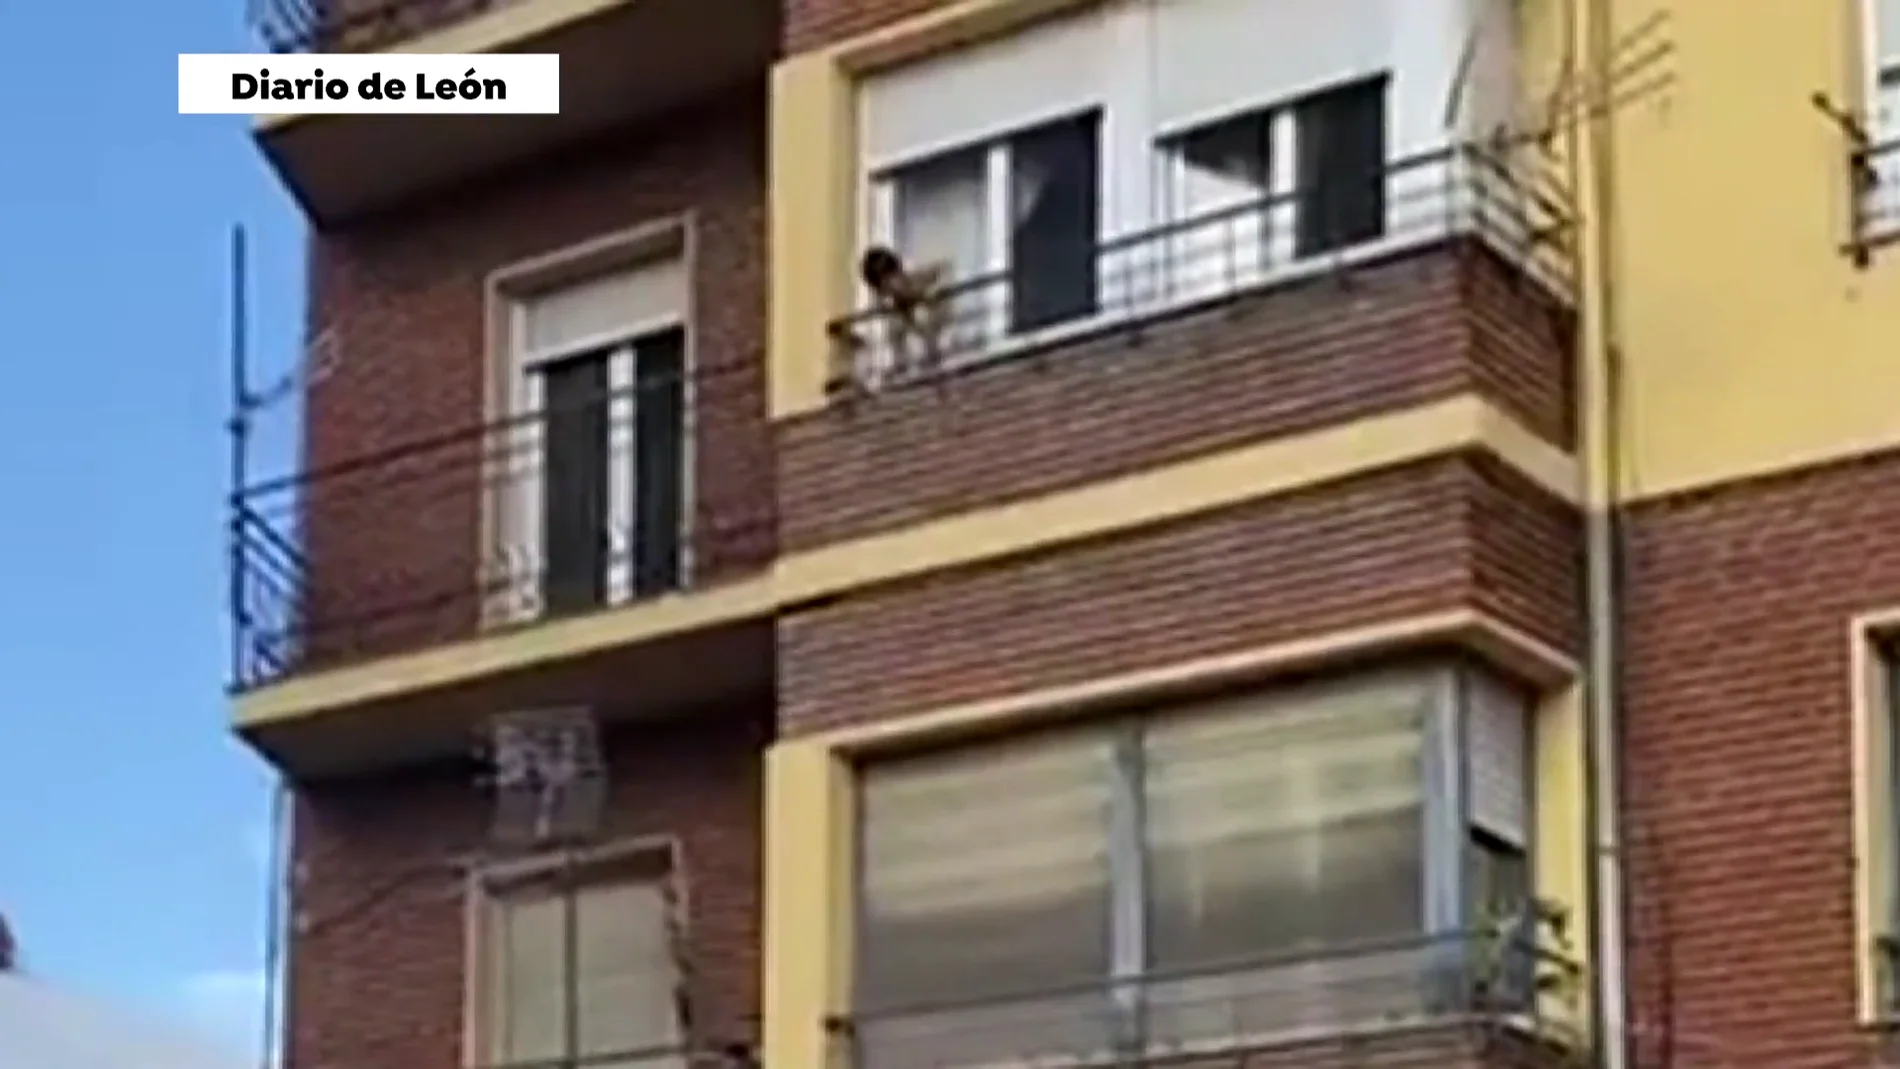 Un niño es salvado in extremis cuando jugaba en el balcón en León